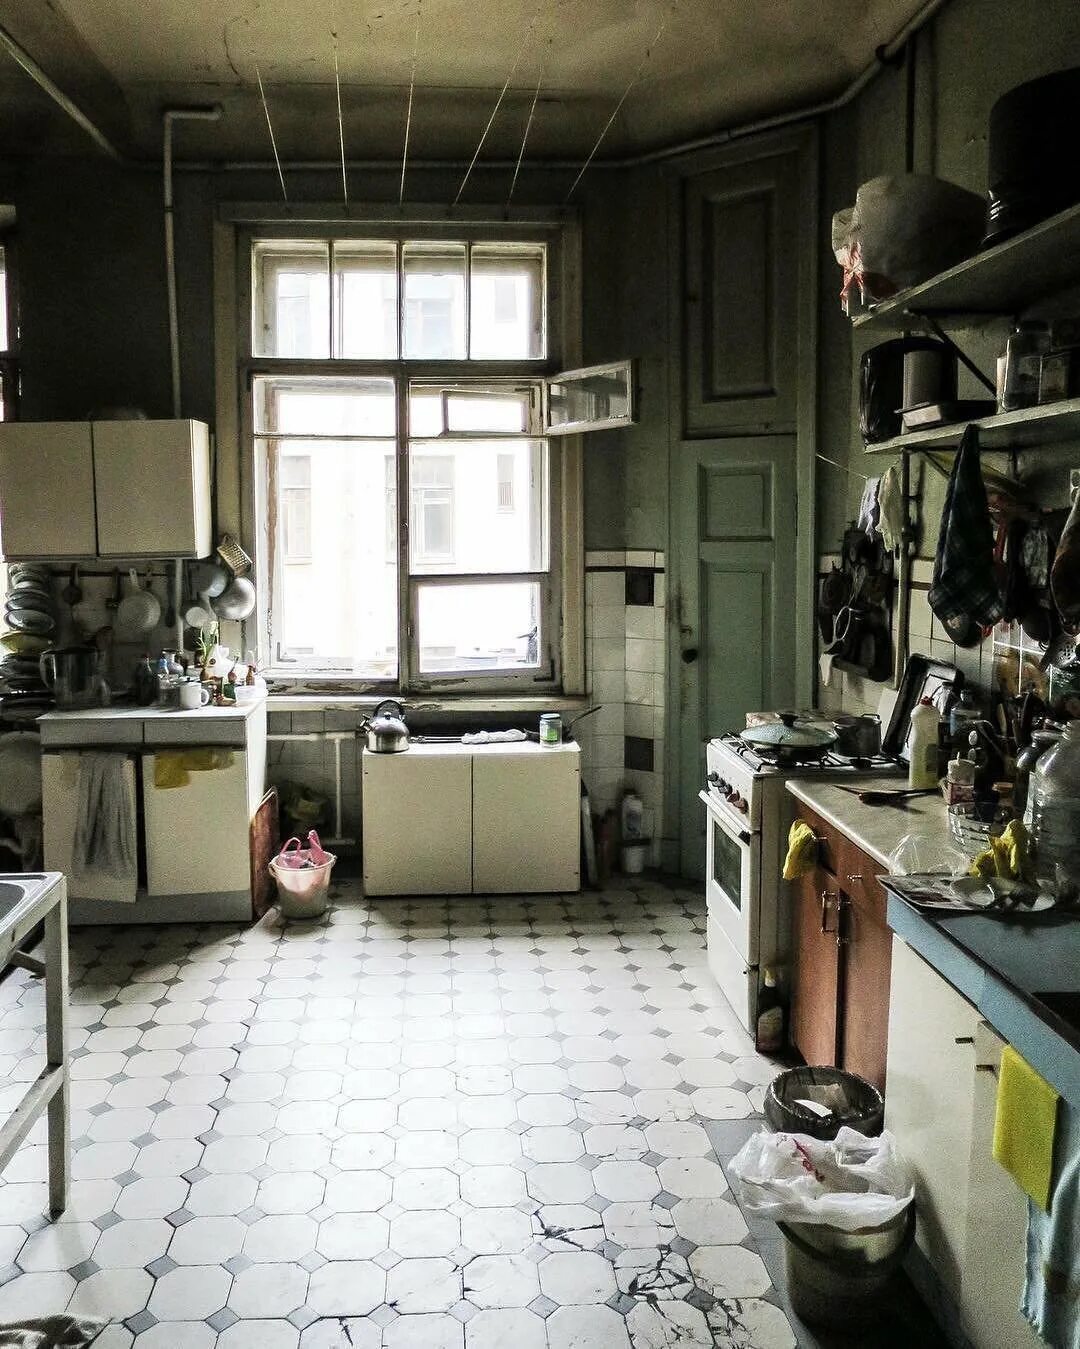 Коммуналка отзывы. Кухня в коммуналке. Кухня в старой квартире. Кухня коммуналки интерьер. Советская кухня.